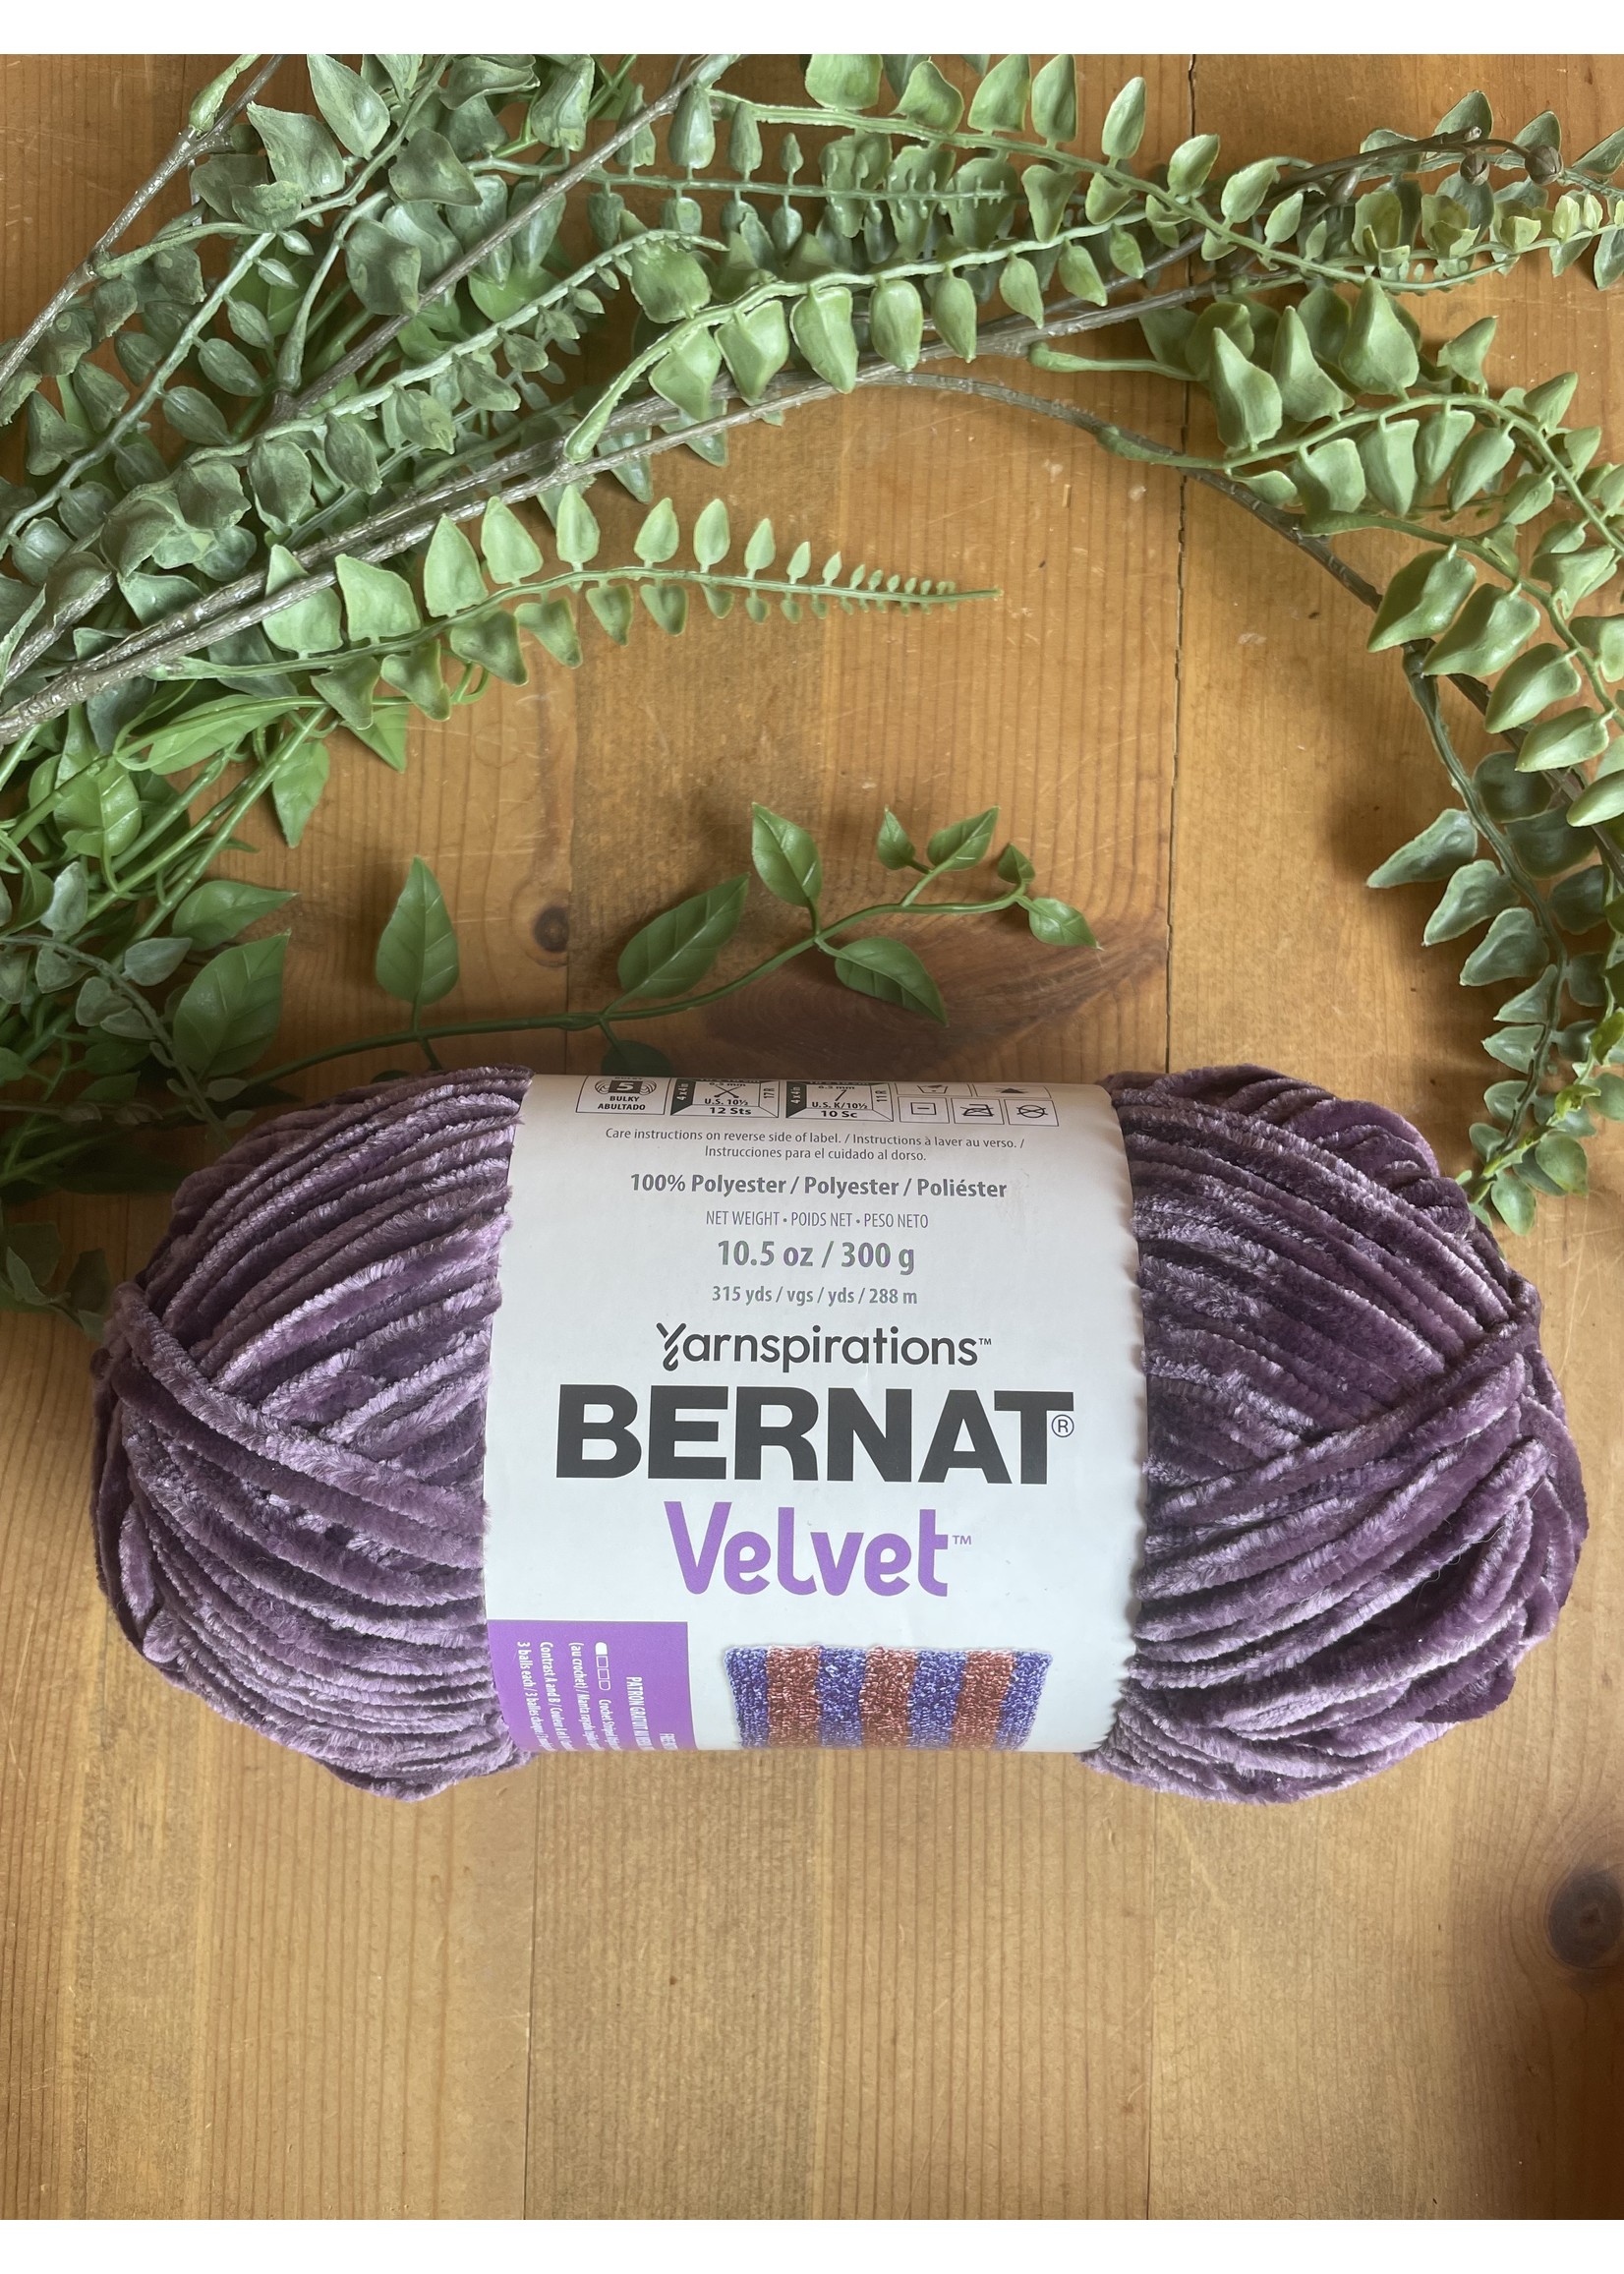 Bernat Velvet Yarn